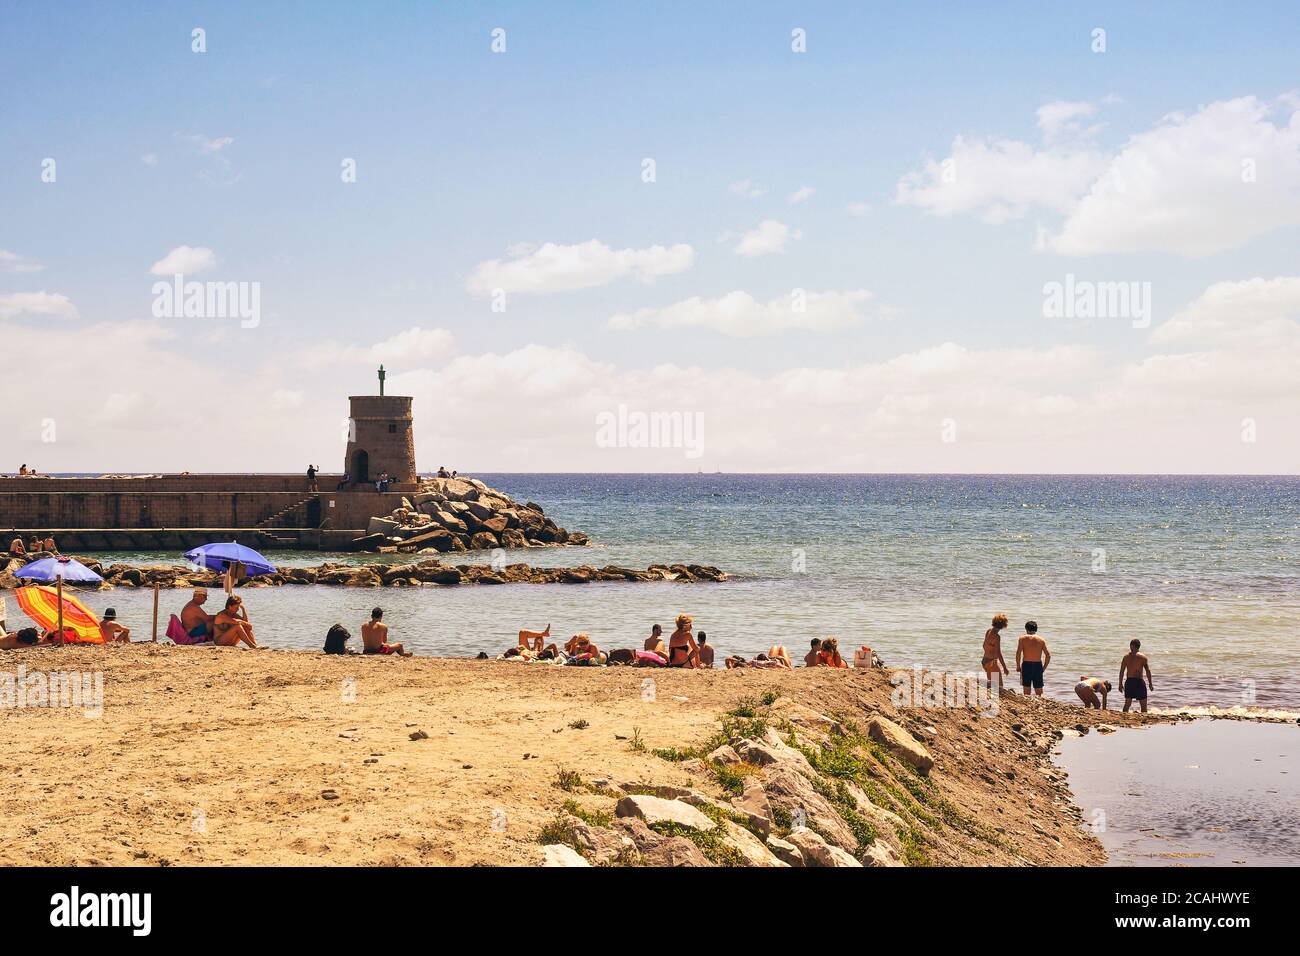 Vista sulla spiaggia libera con i vacanzieri e il faro in pietra sul molo che si affaccia sul Golfo del Paradiso, Recco, Genova, Liguria, Italia Foto Stock